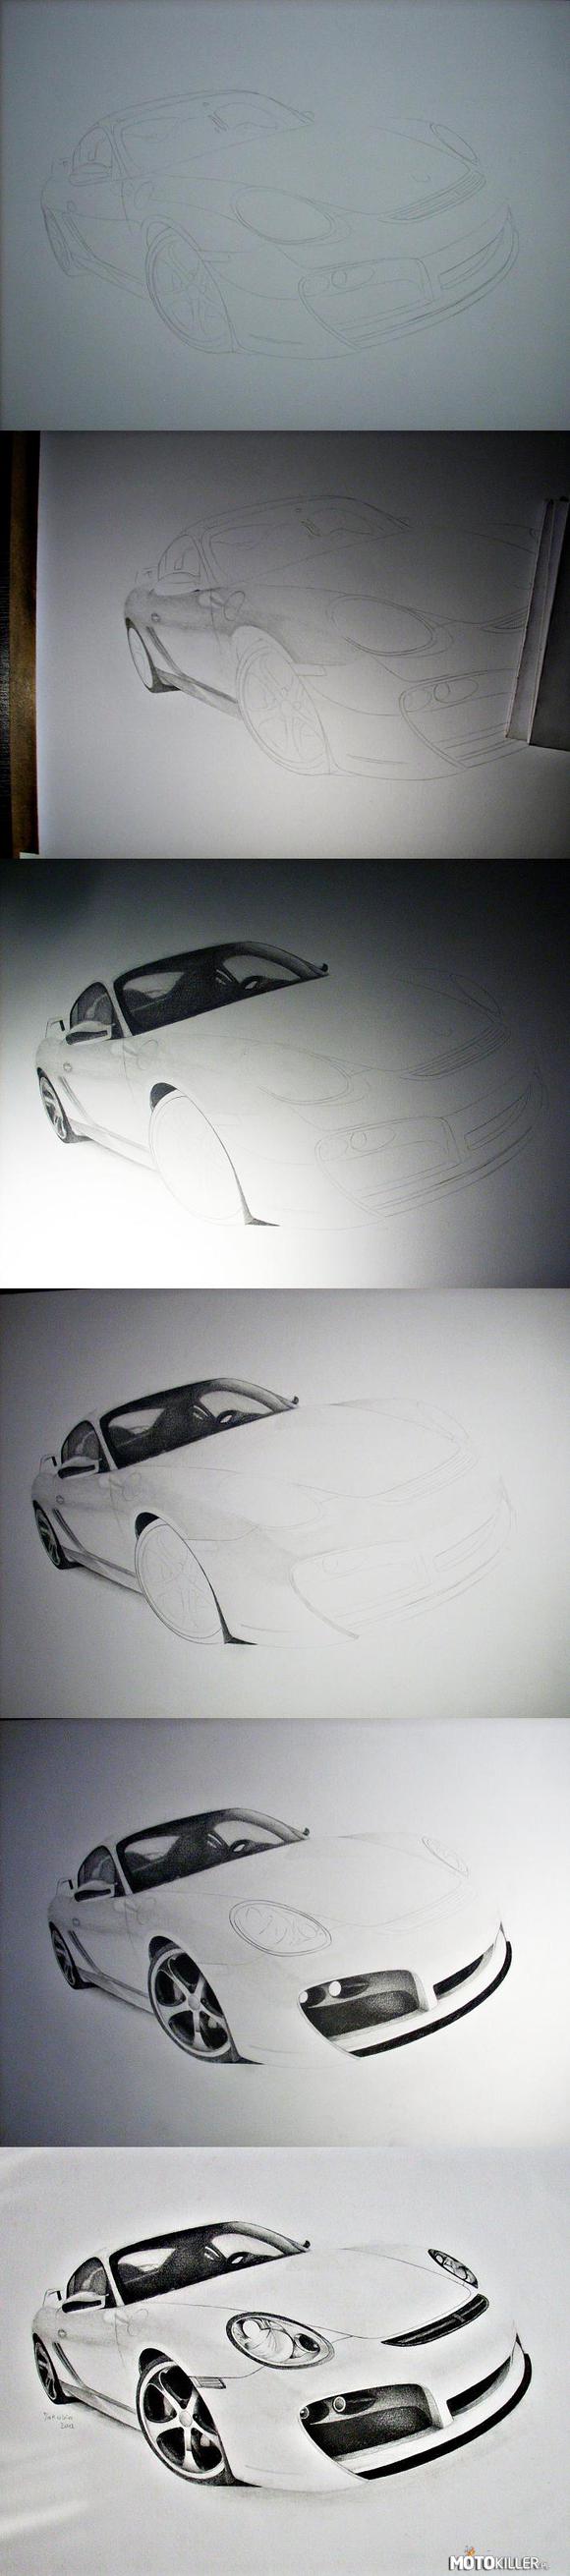 TechArt Porsche Cayman - Rysunek w trakcie prac – Mało przedstawiające zdjęcia, ale tak mniej/więcej jest pokazane jak to wszystko powstaje. 
Niedługo postaram się przygotować bardzo szczegółowy progress. 

Po więcej zapraszam do linku w źródle. 